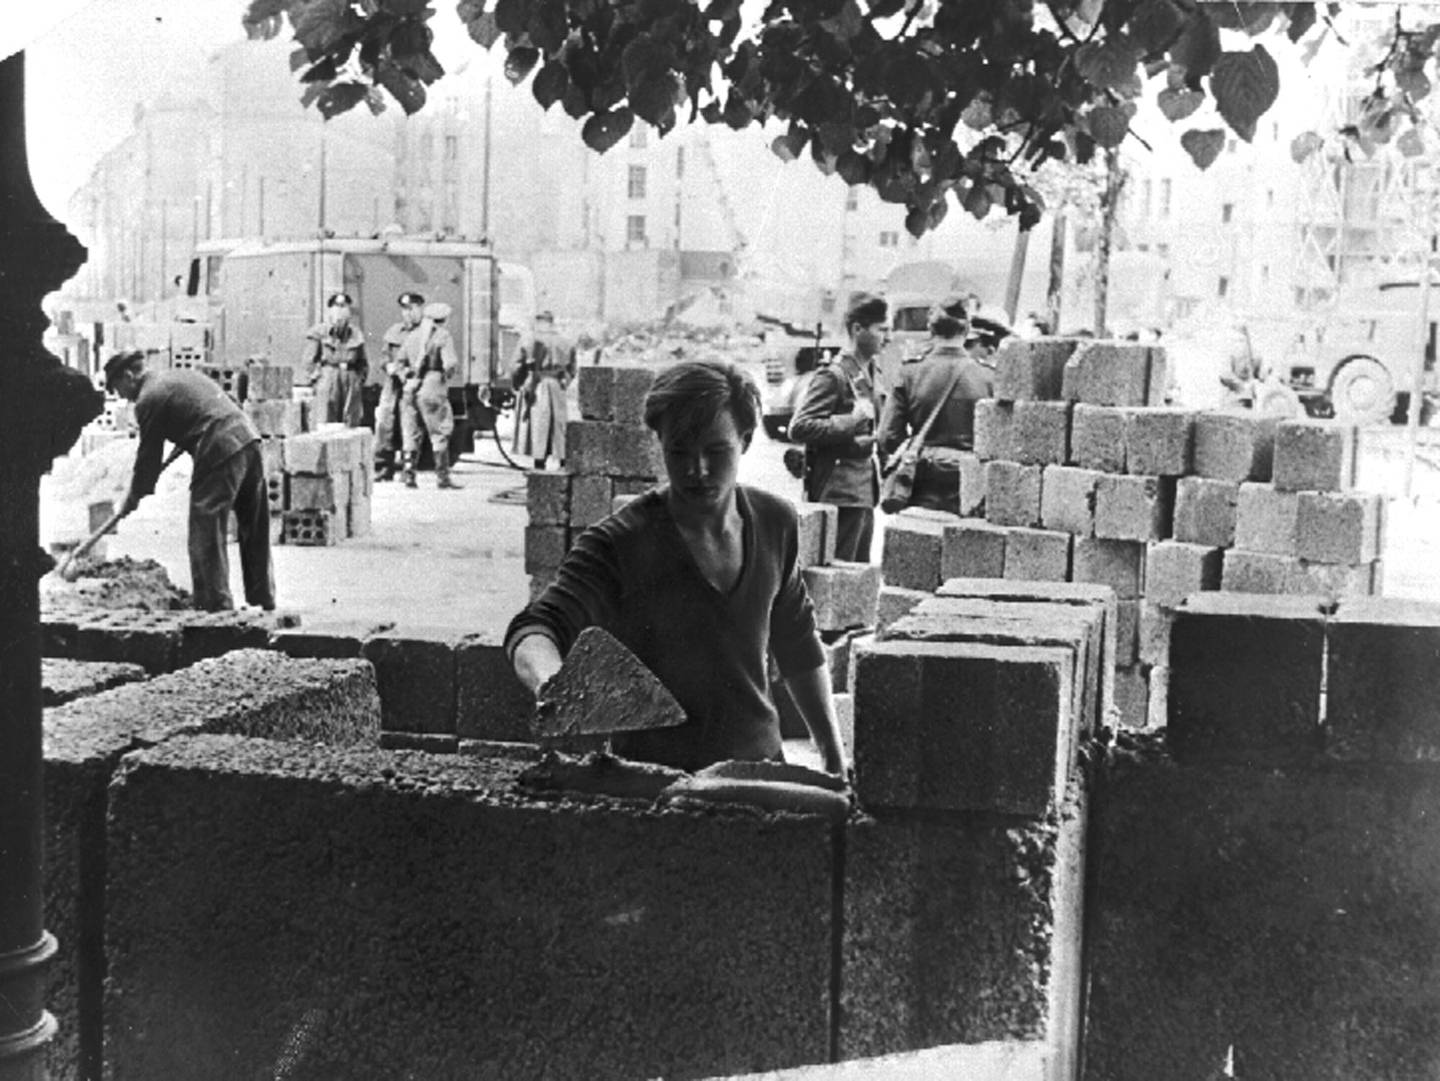 Bildet er fra de første delene av Berlinmuren ble bygd 13. august 1961. En person smører mørtel på betongblokken for å gjøre klar for neste høyde med mur. Foto: Peter Hillebrecht / AP / NTB